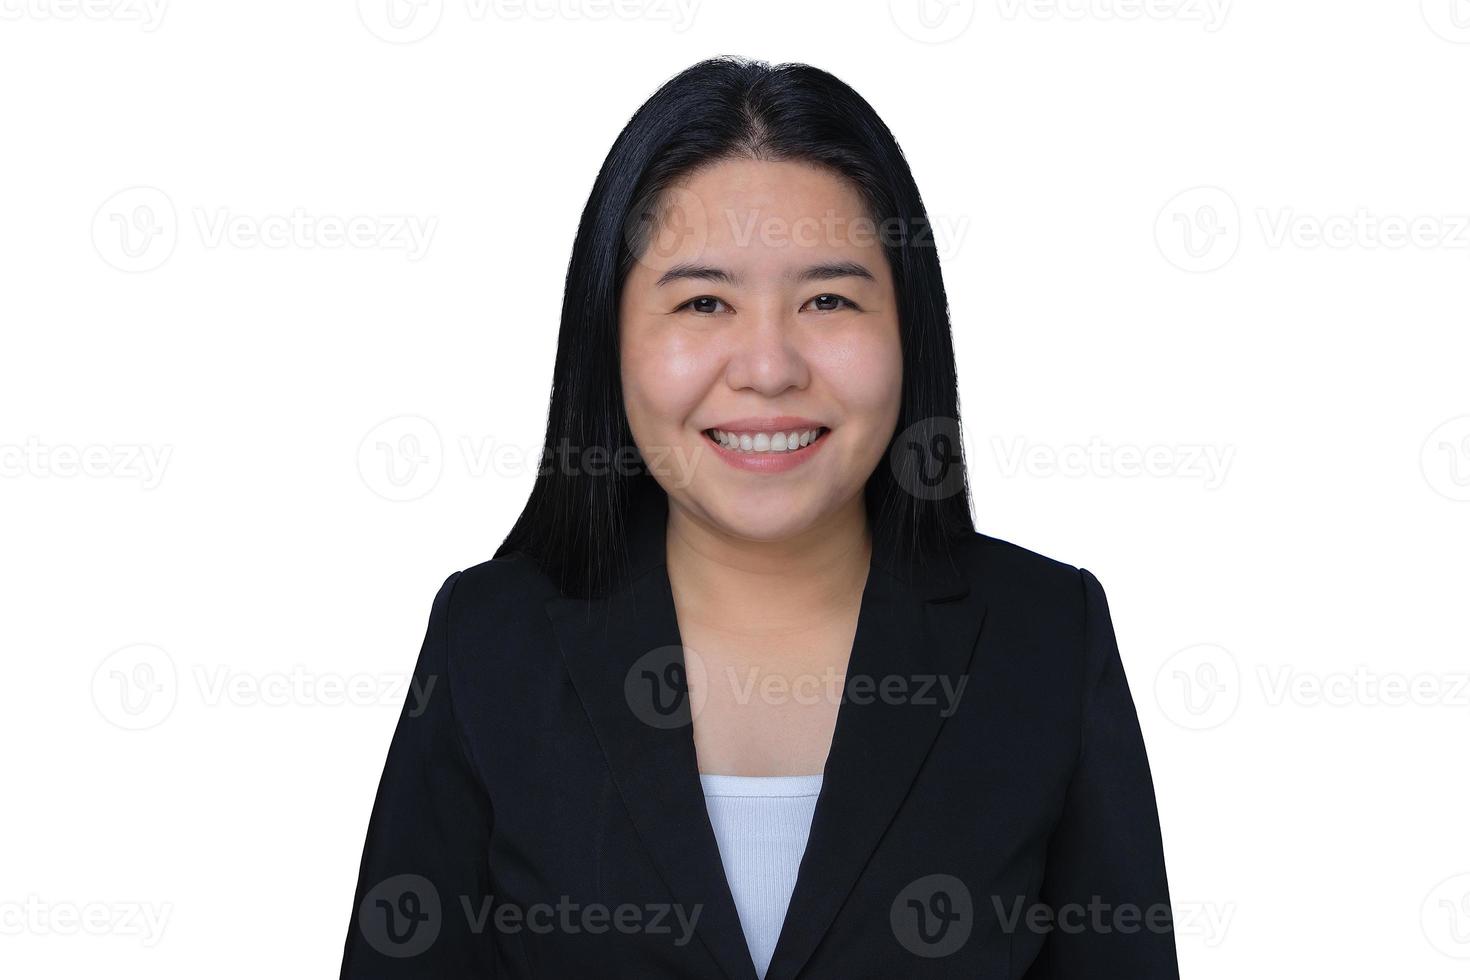 gelukkig volwassen glimlachen zakenvrouw portret met zwart pak kijken Bij camera geïsoleerd Aan wit achtergrond. mooi ouder uitvoerend professioneel bedrijf vrouw geslaagd met vertrouwen poseren in studio foto